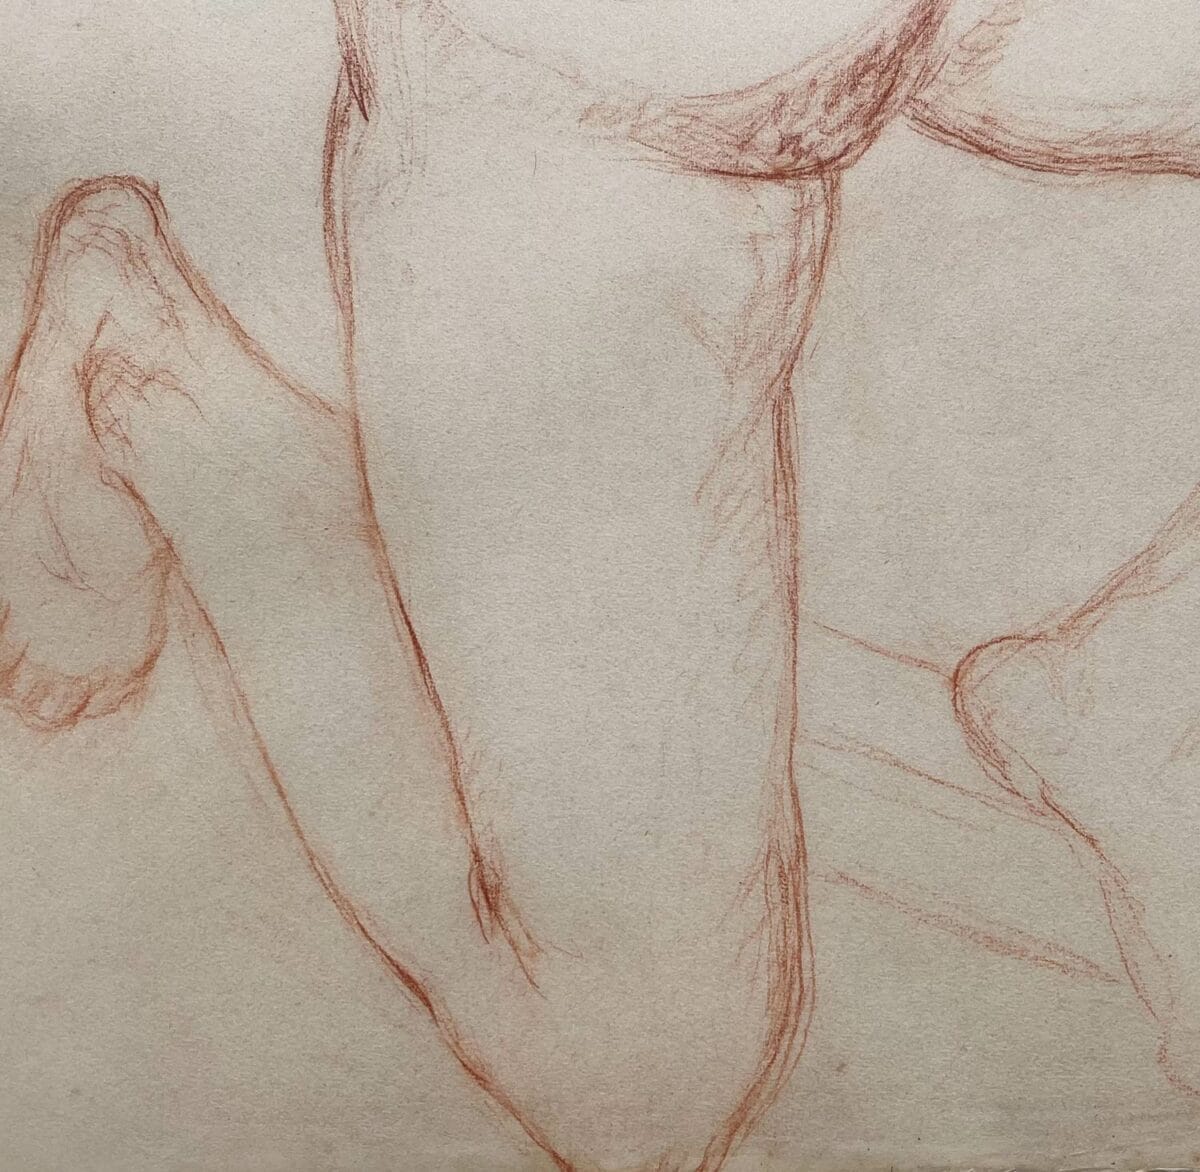 Œuvre de Charles Malfray, sculpteur français du XXe siècle, ce grand dessin au fusain représente une danseuse nue.